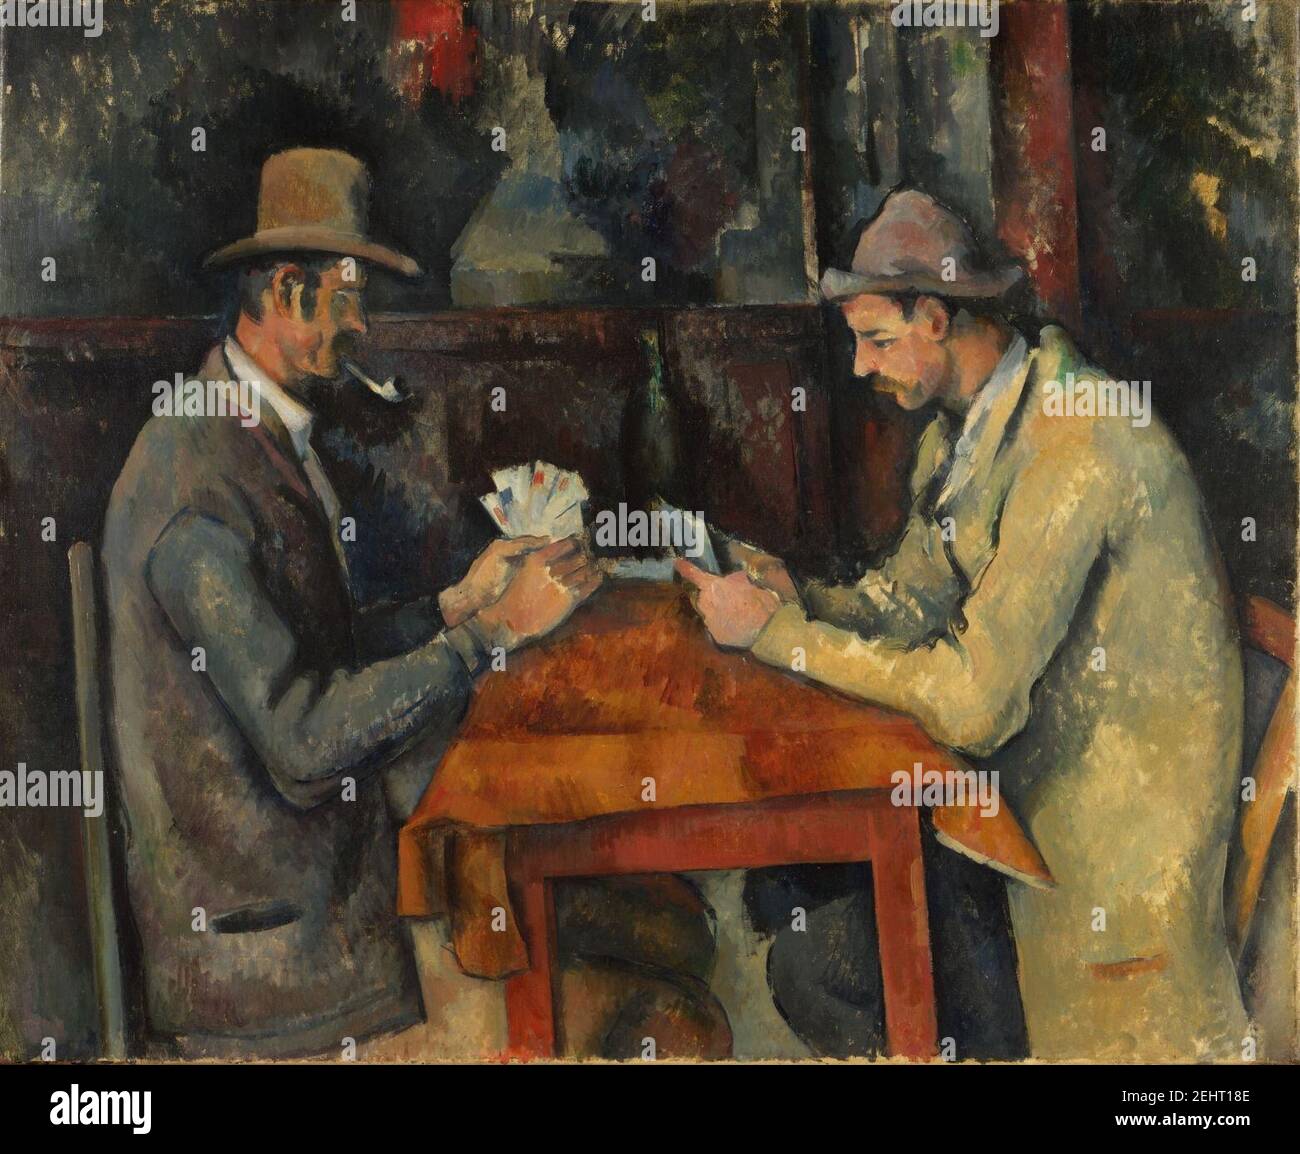 Paul Cézanne, 1892-95, Les joueurs de carte (The Card Players), Stock Photo